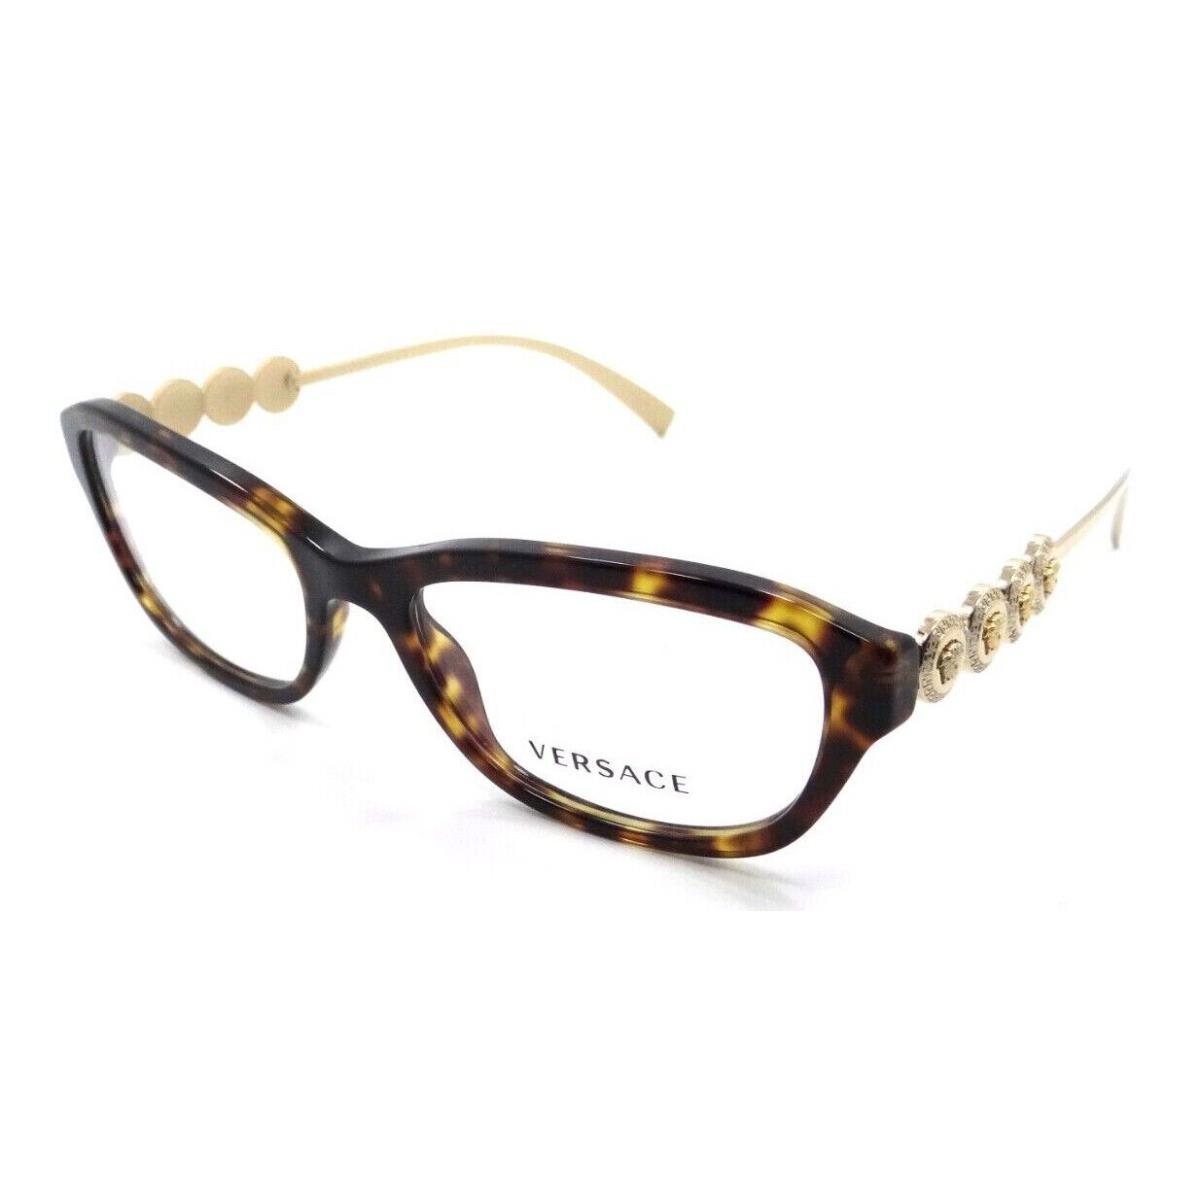 Versace Eyeglasses Frames VE 3279 108 54-17-135 Dark Havana Made in Italy